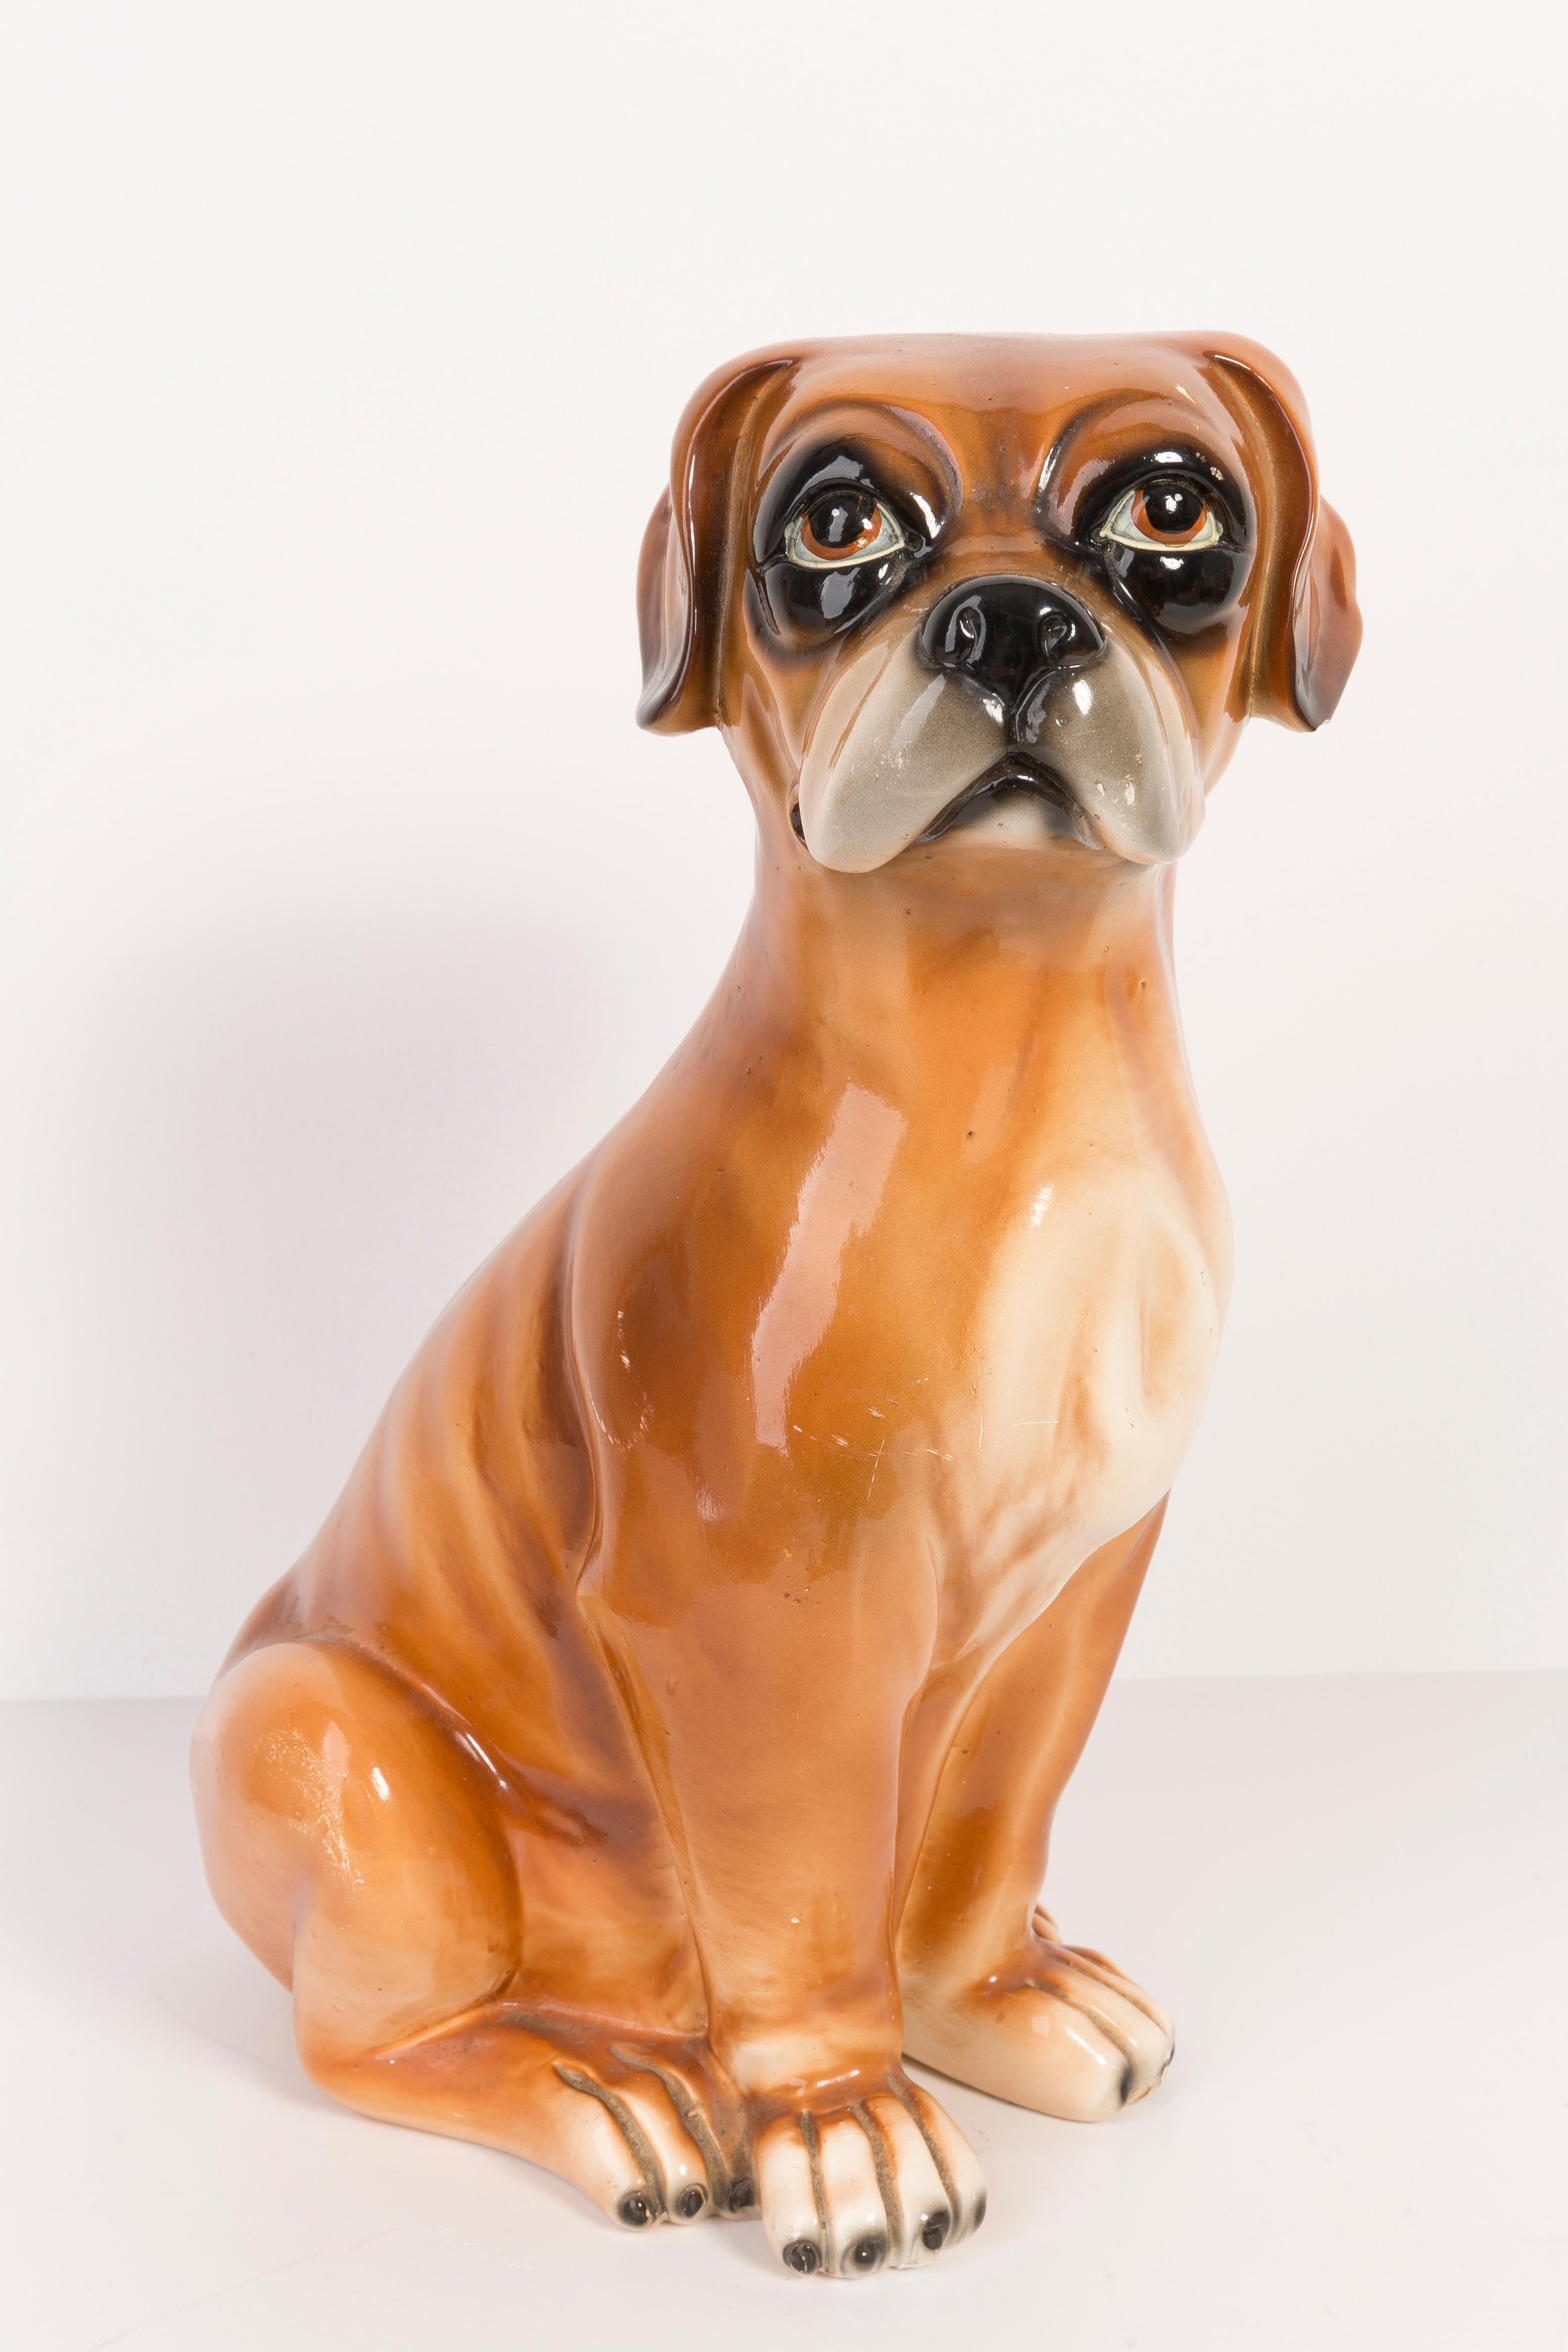 Bemalte Keramik/Terrakotta, guter Originalzustand. Schöne und einzigartige dekorative Skulptur. Der Boxer-Hund wurde in den 1960er Jahren in Italien hergestellt.